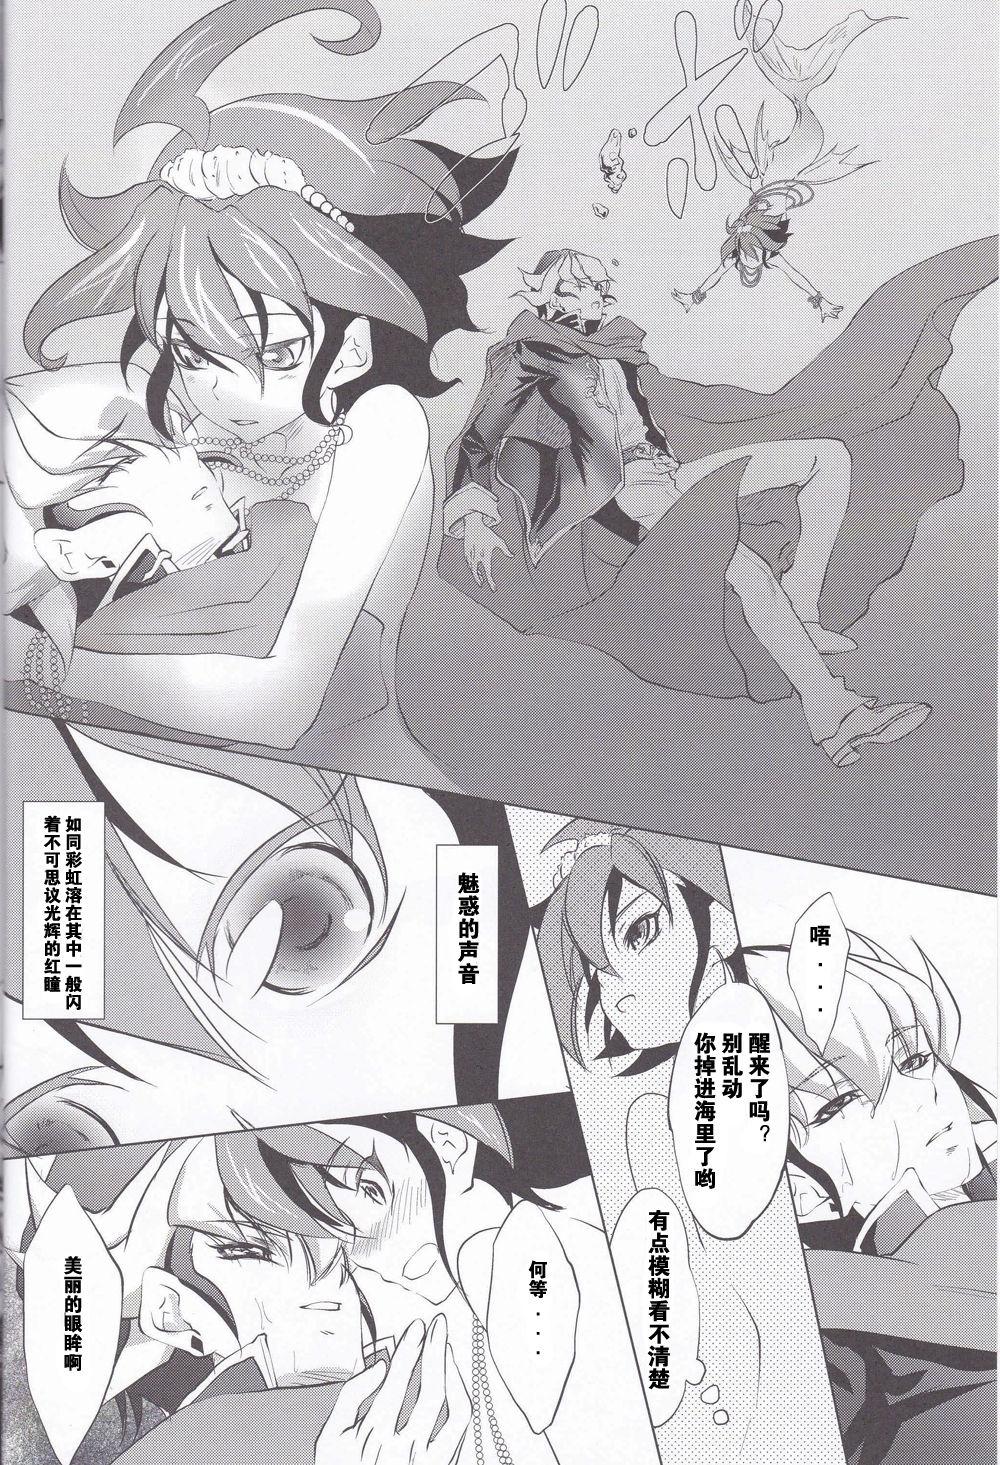 Cavala Mermaid Memory - Yu gi oh arc v Teenpussy - Page 3